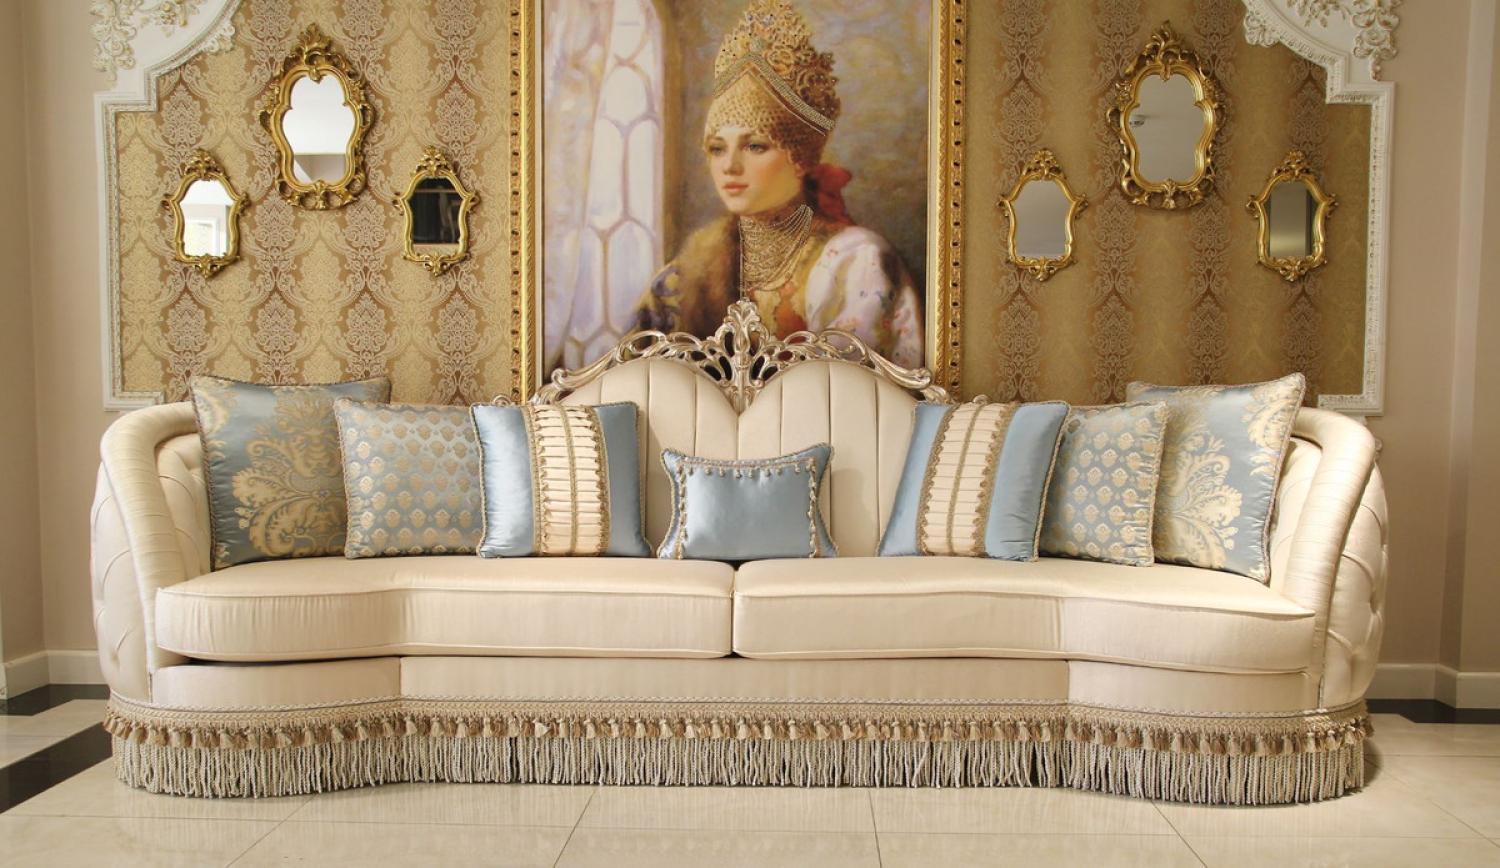 Casa Padrino Luxus Barock Wohnzimmer Sofa Beige / Silber 300 x 95 x H. 115 cm - Prunkvolles Sofa im Barockstil Bild 1